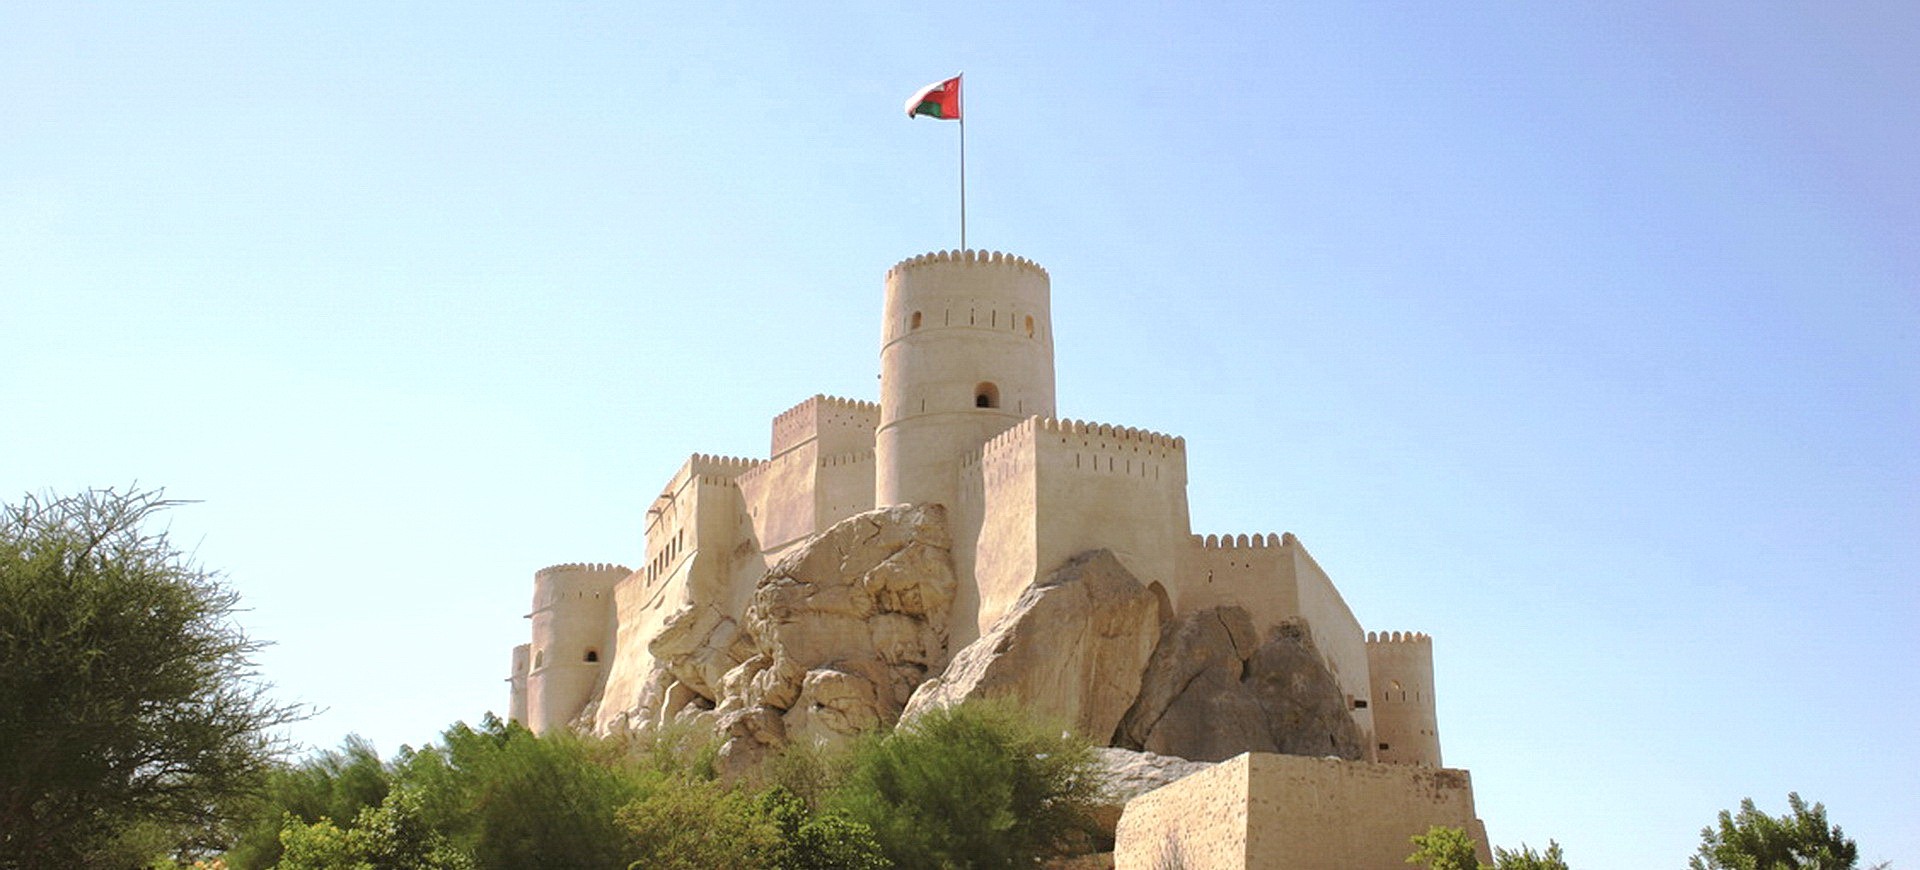 Oman Nakhal Fort